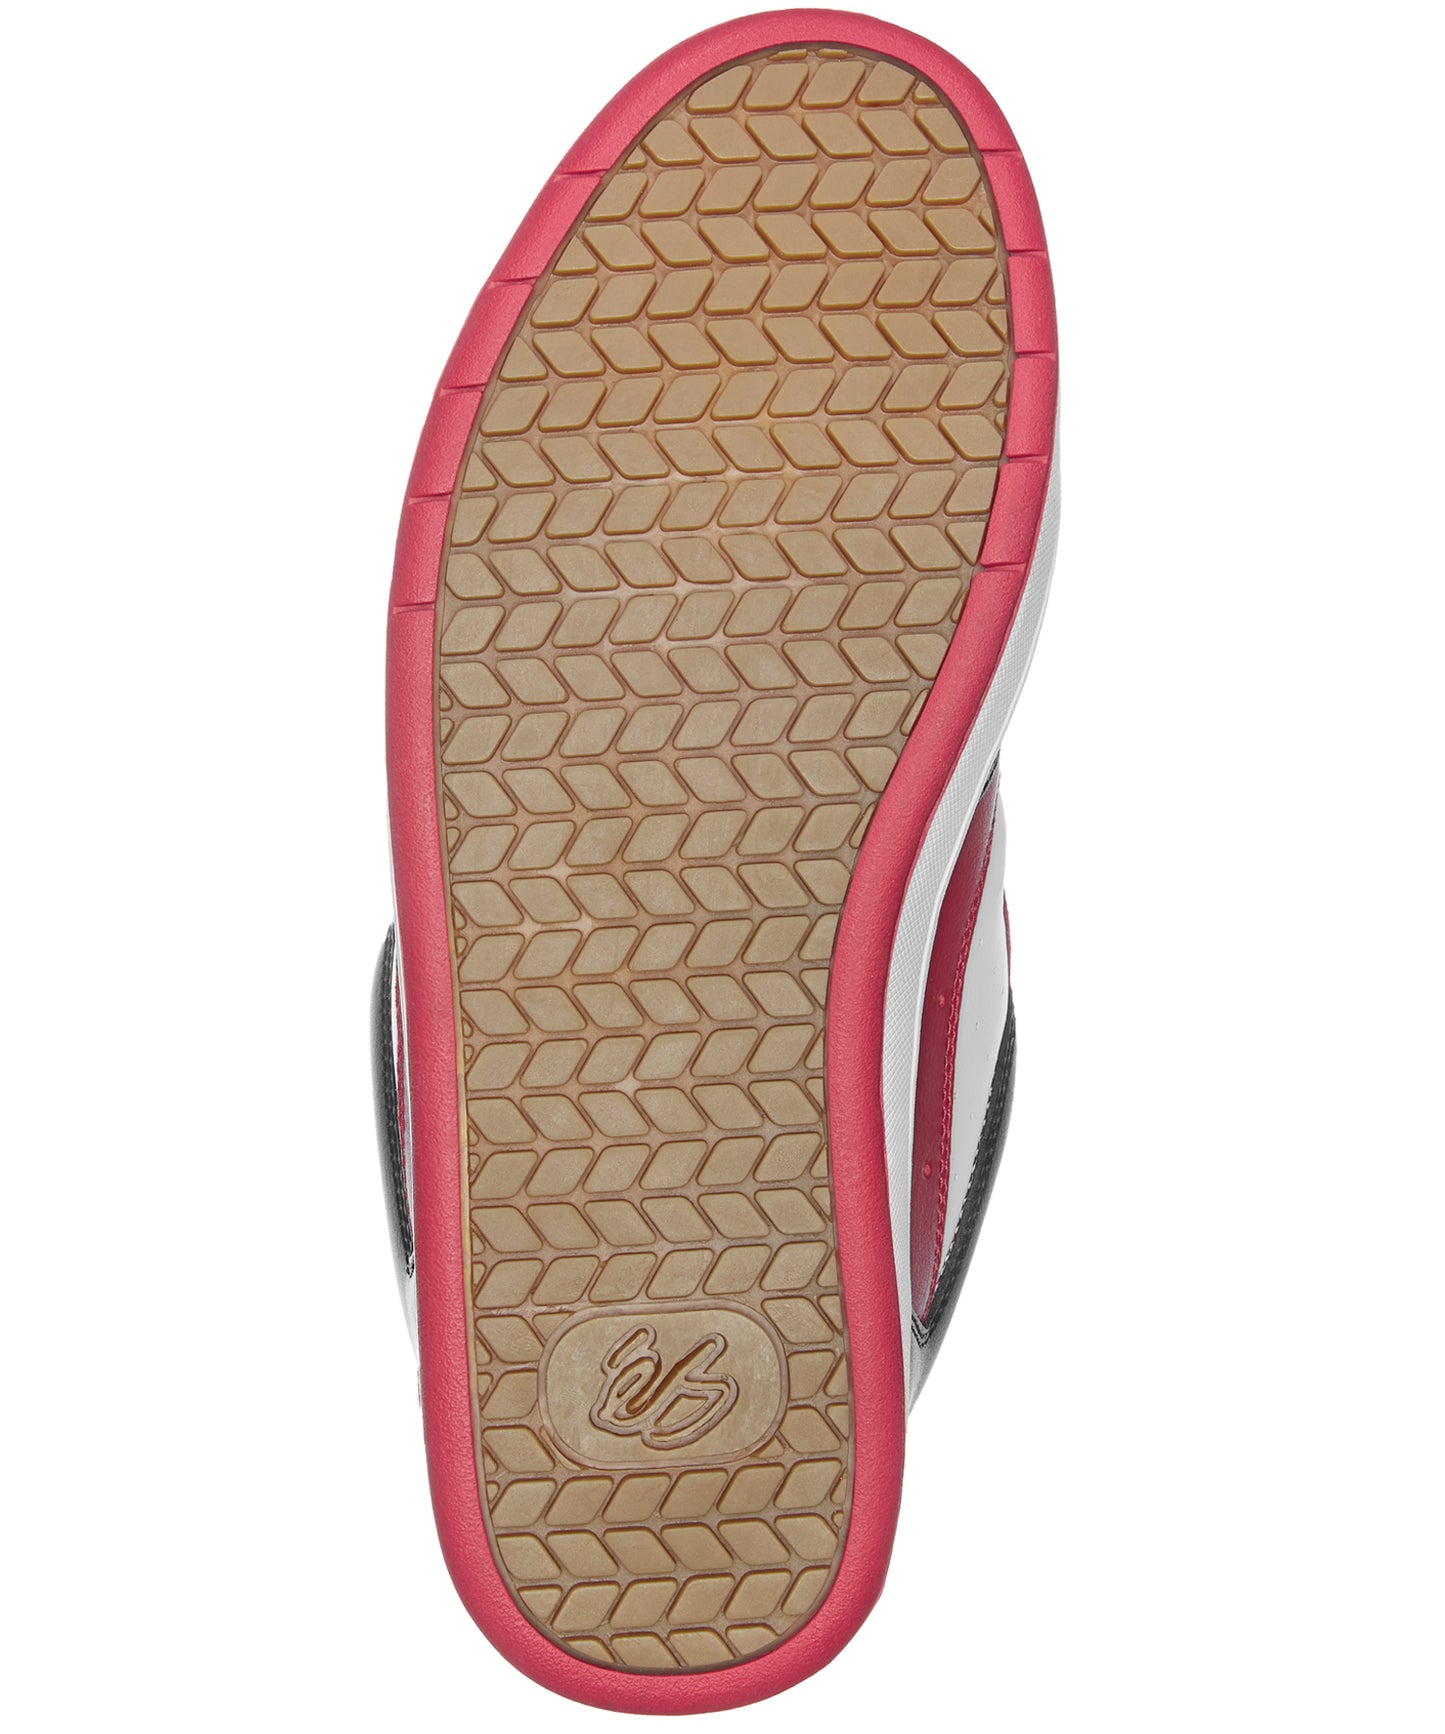 és-zapatillas-og-rojo-negro-y blanco-la zapatilla de skate definitiva-suelas y lengüeta de espuma-Suela de goma 400 NBS.etresuella-troquelada.